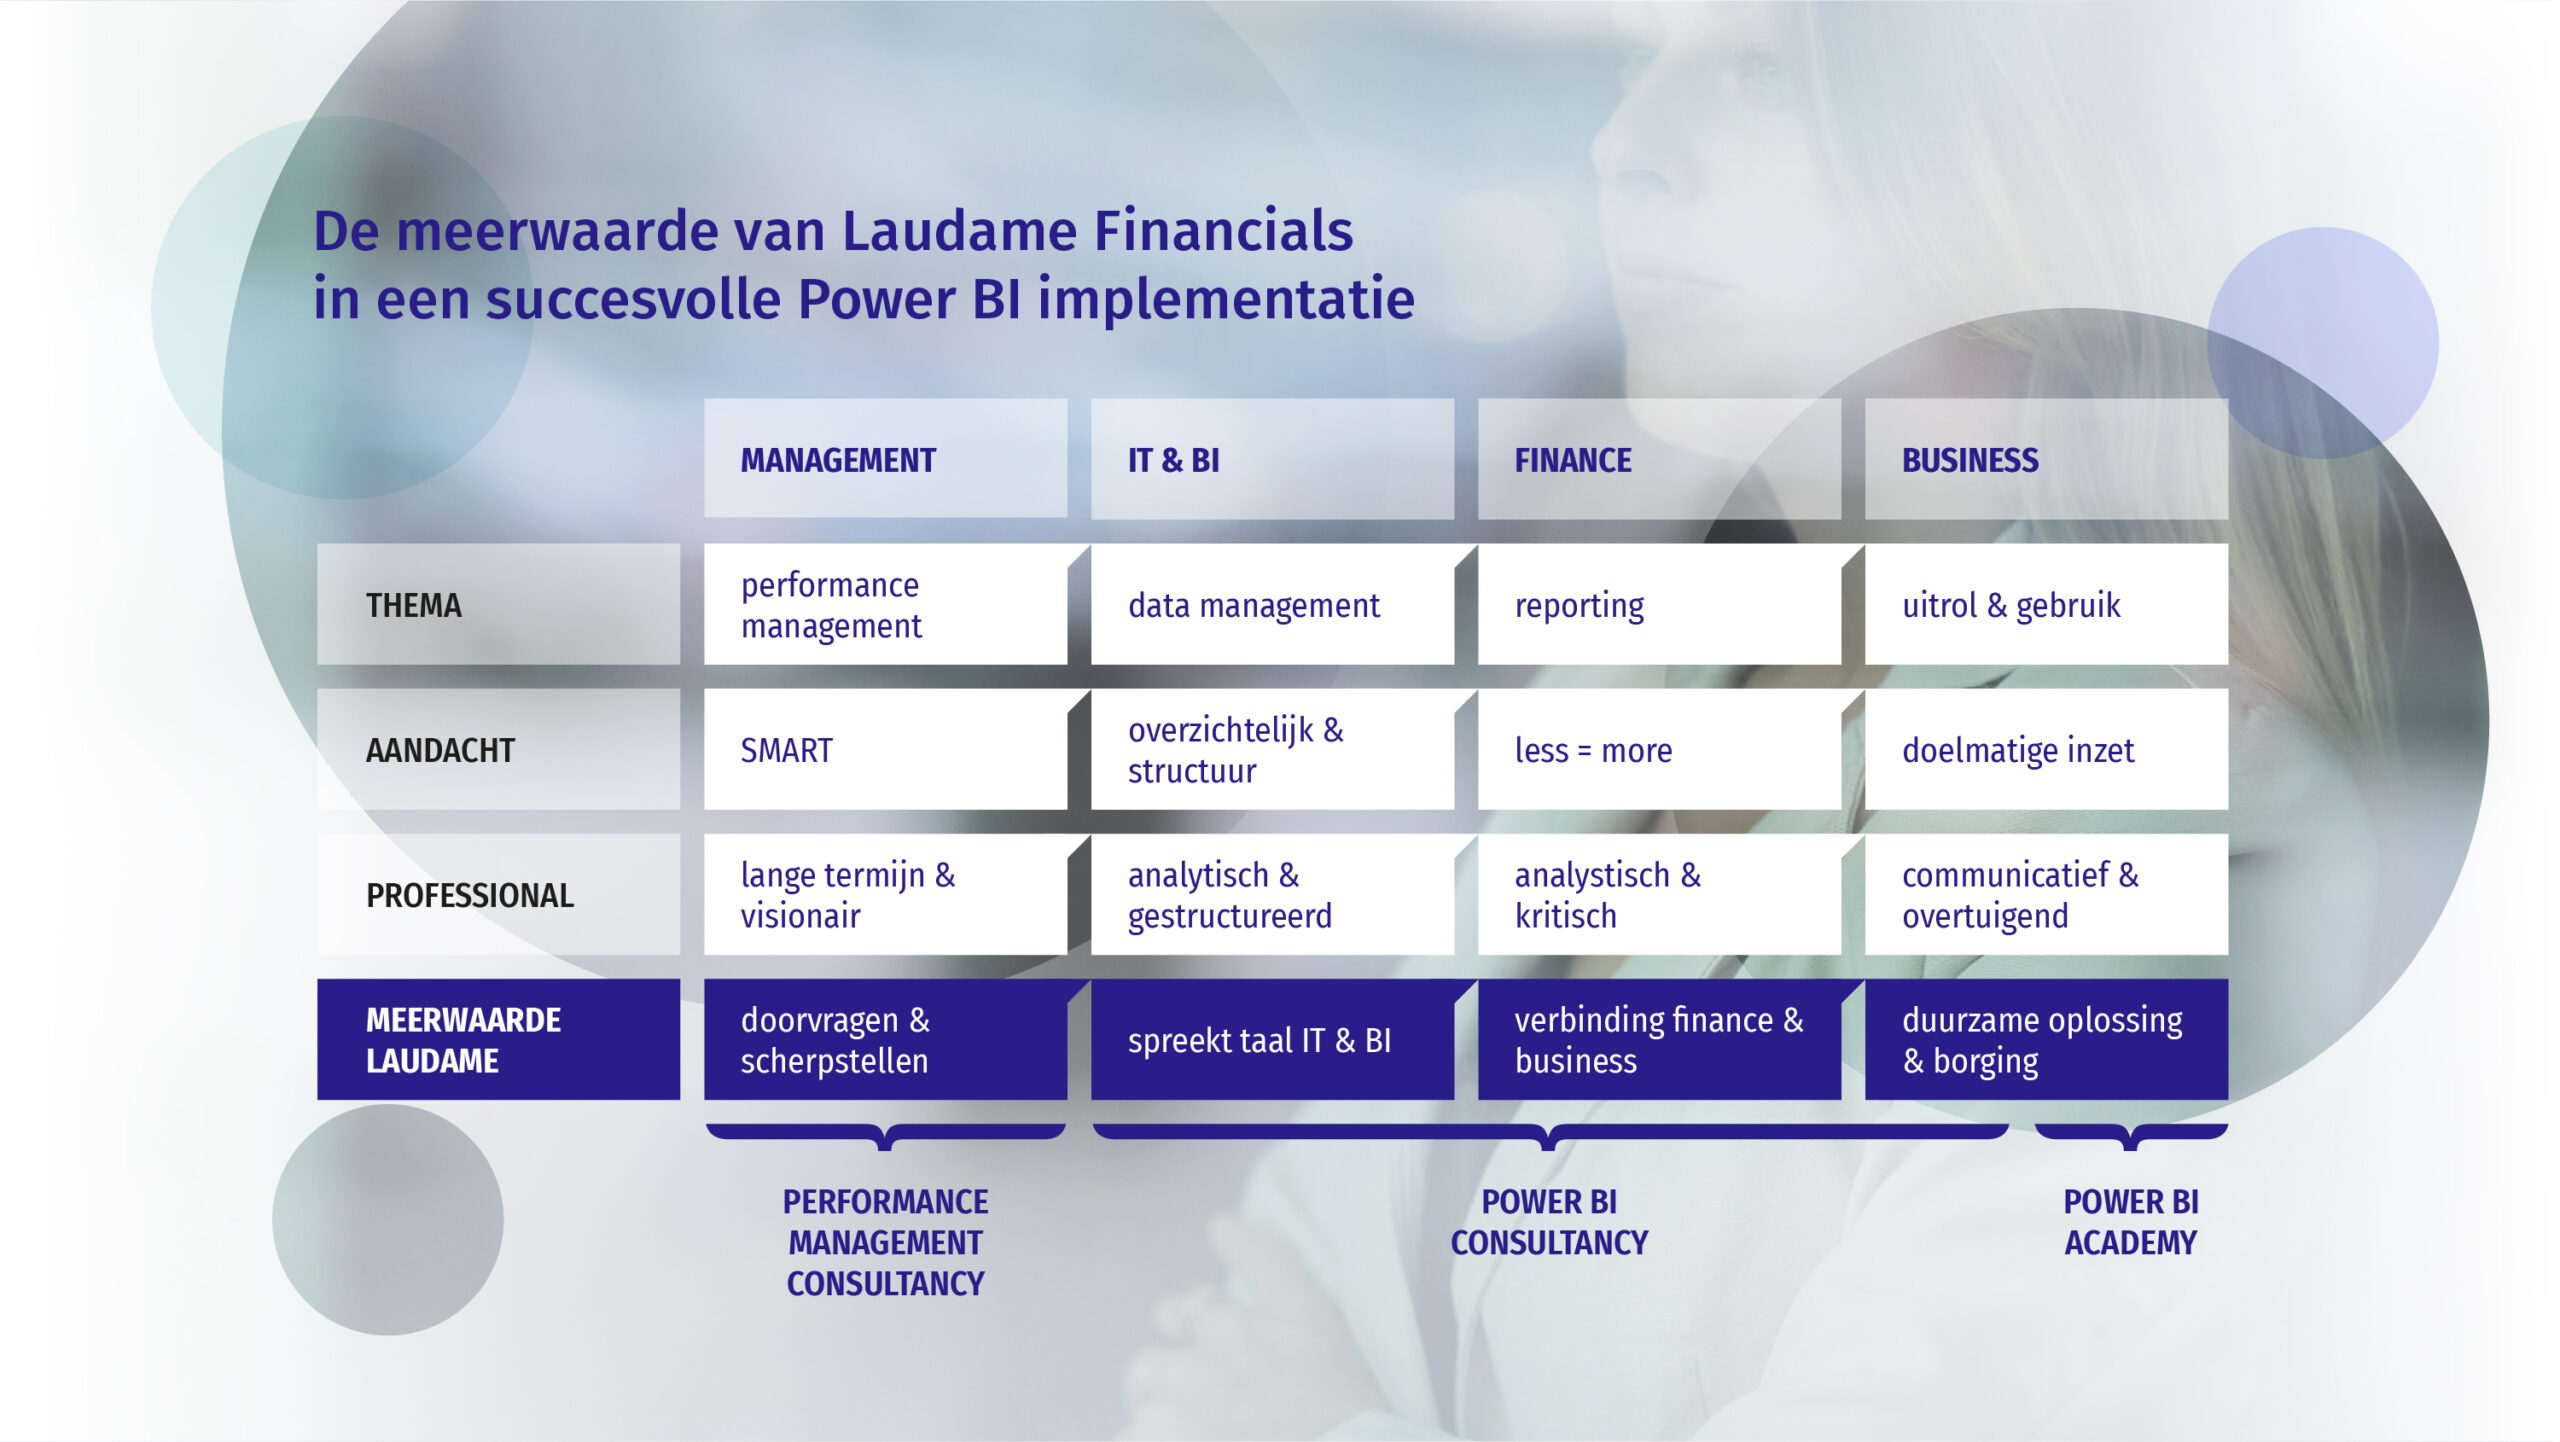 De meerwaarde van Laudame Financials in succesvolle Power BI implementatie